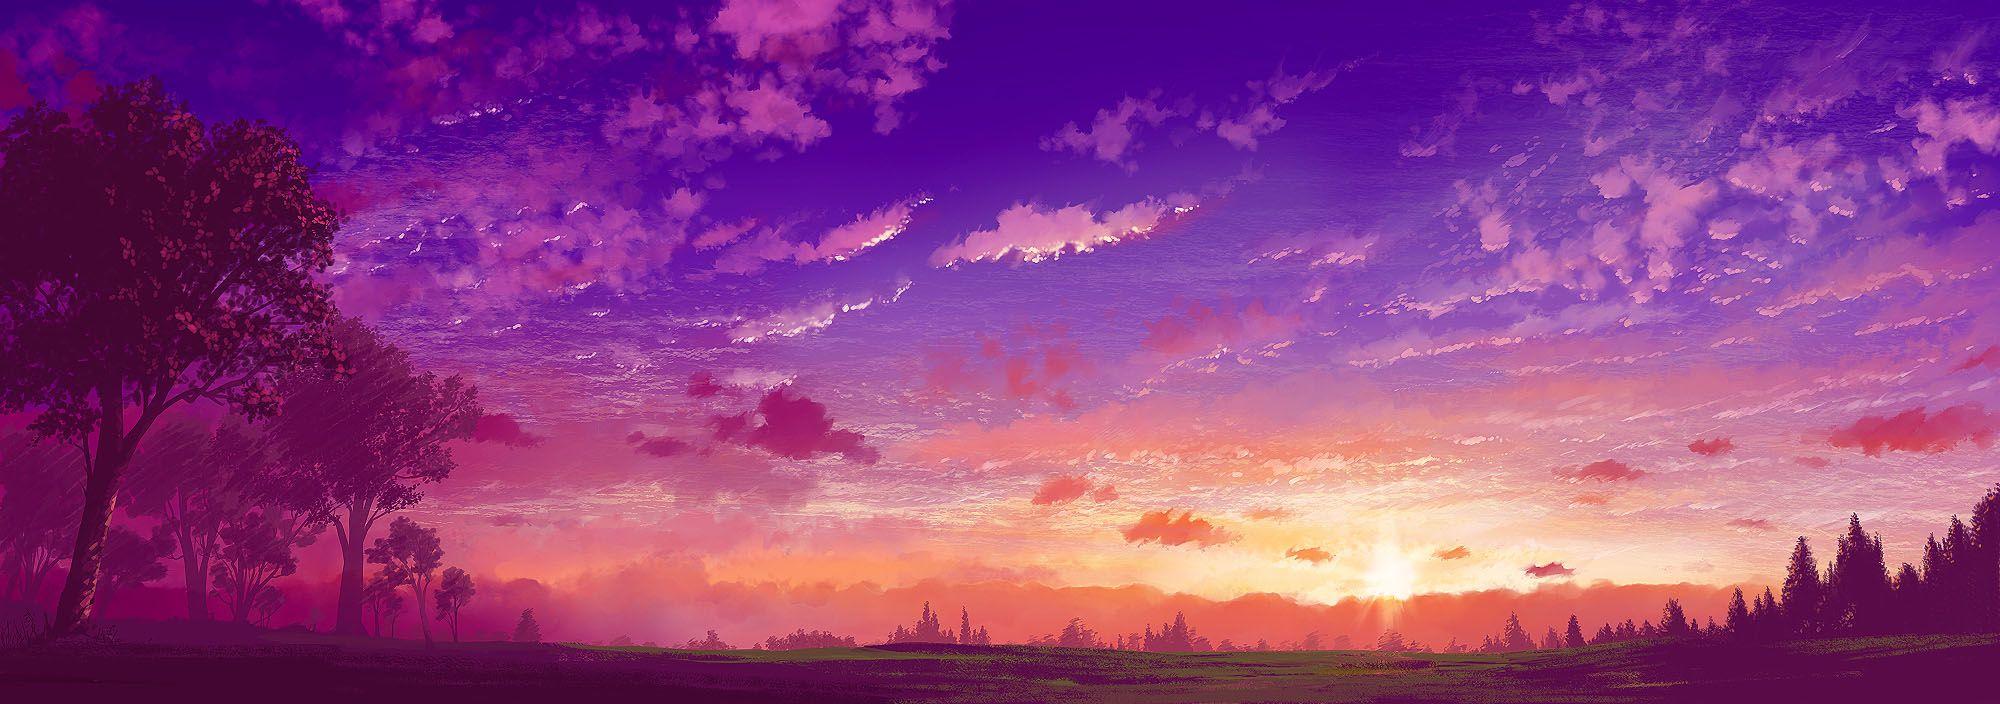 Anime Scenery Wallpaper Purple Landscape, HD Wallpaper